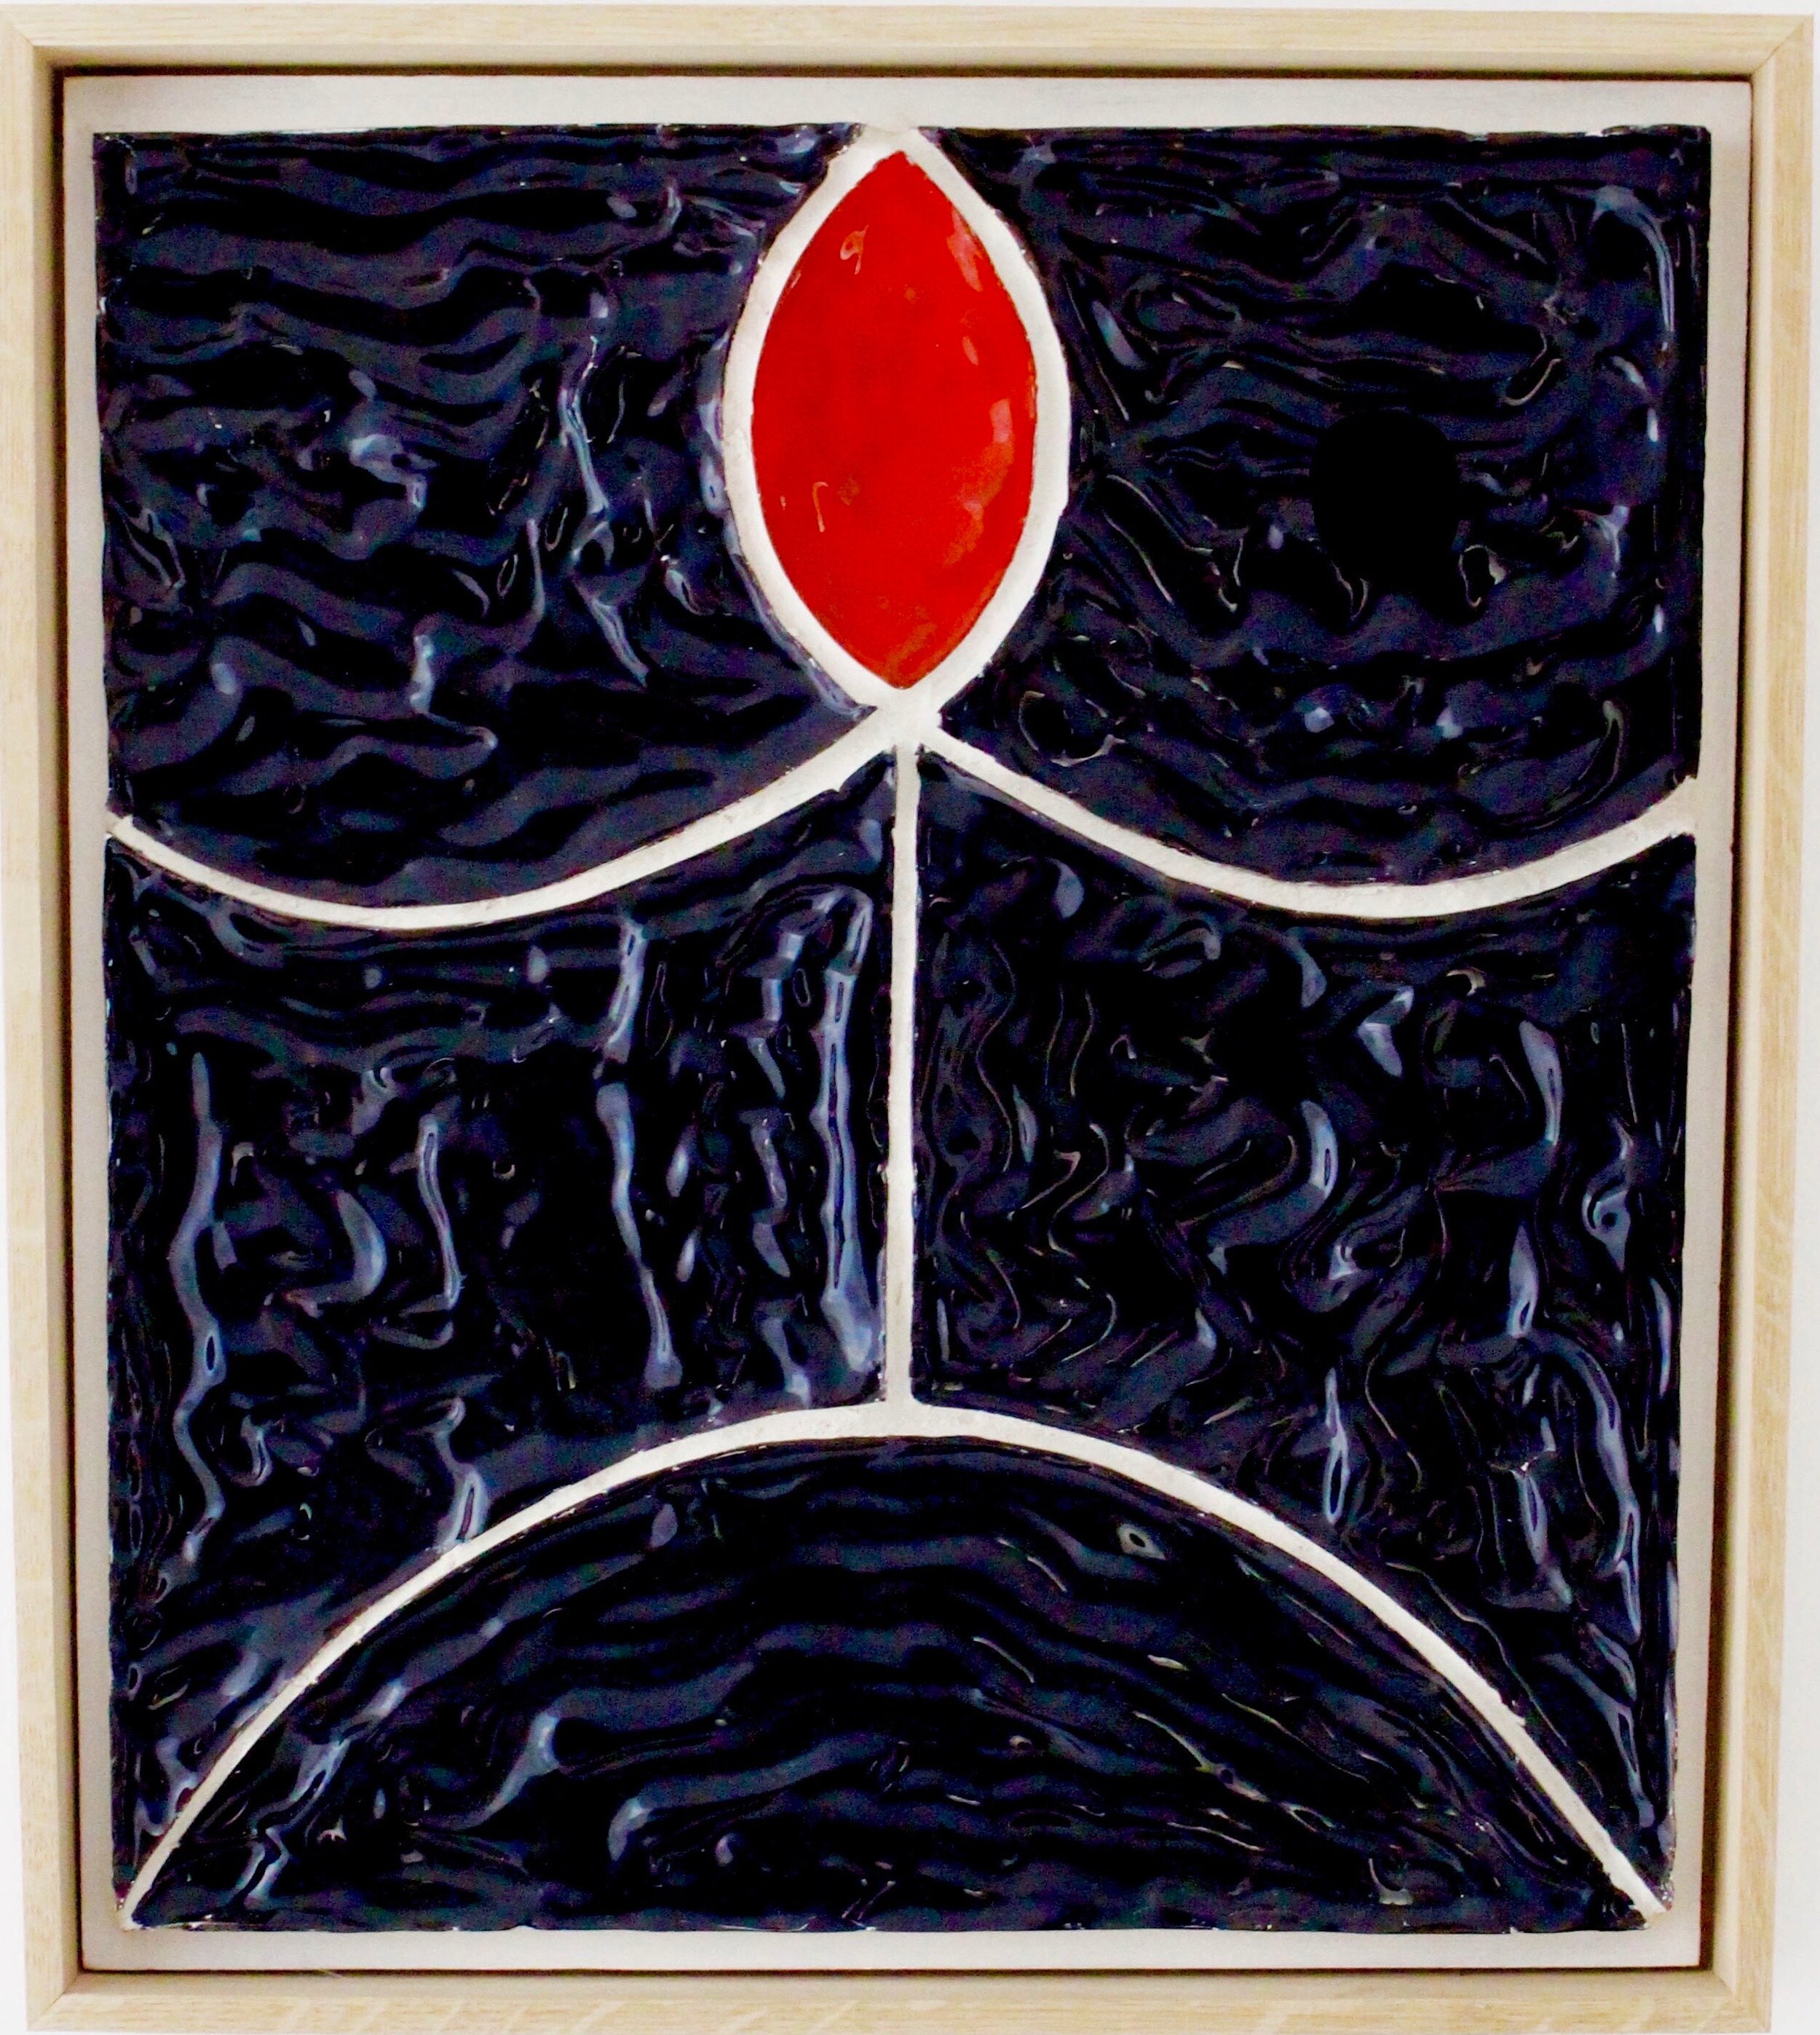   Personnage à tête rouge , 2019.  Céramique sur caisse en bois  41 x 47 cm  © J-C Lett 